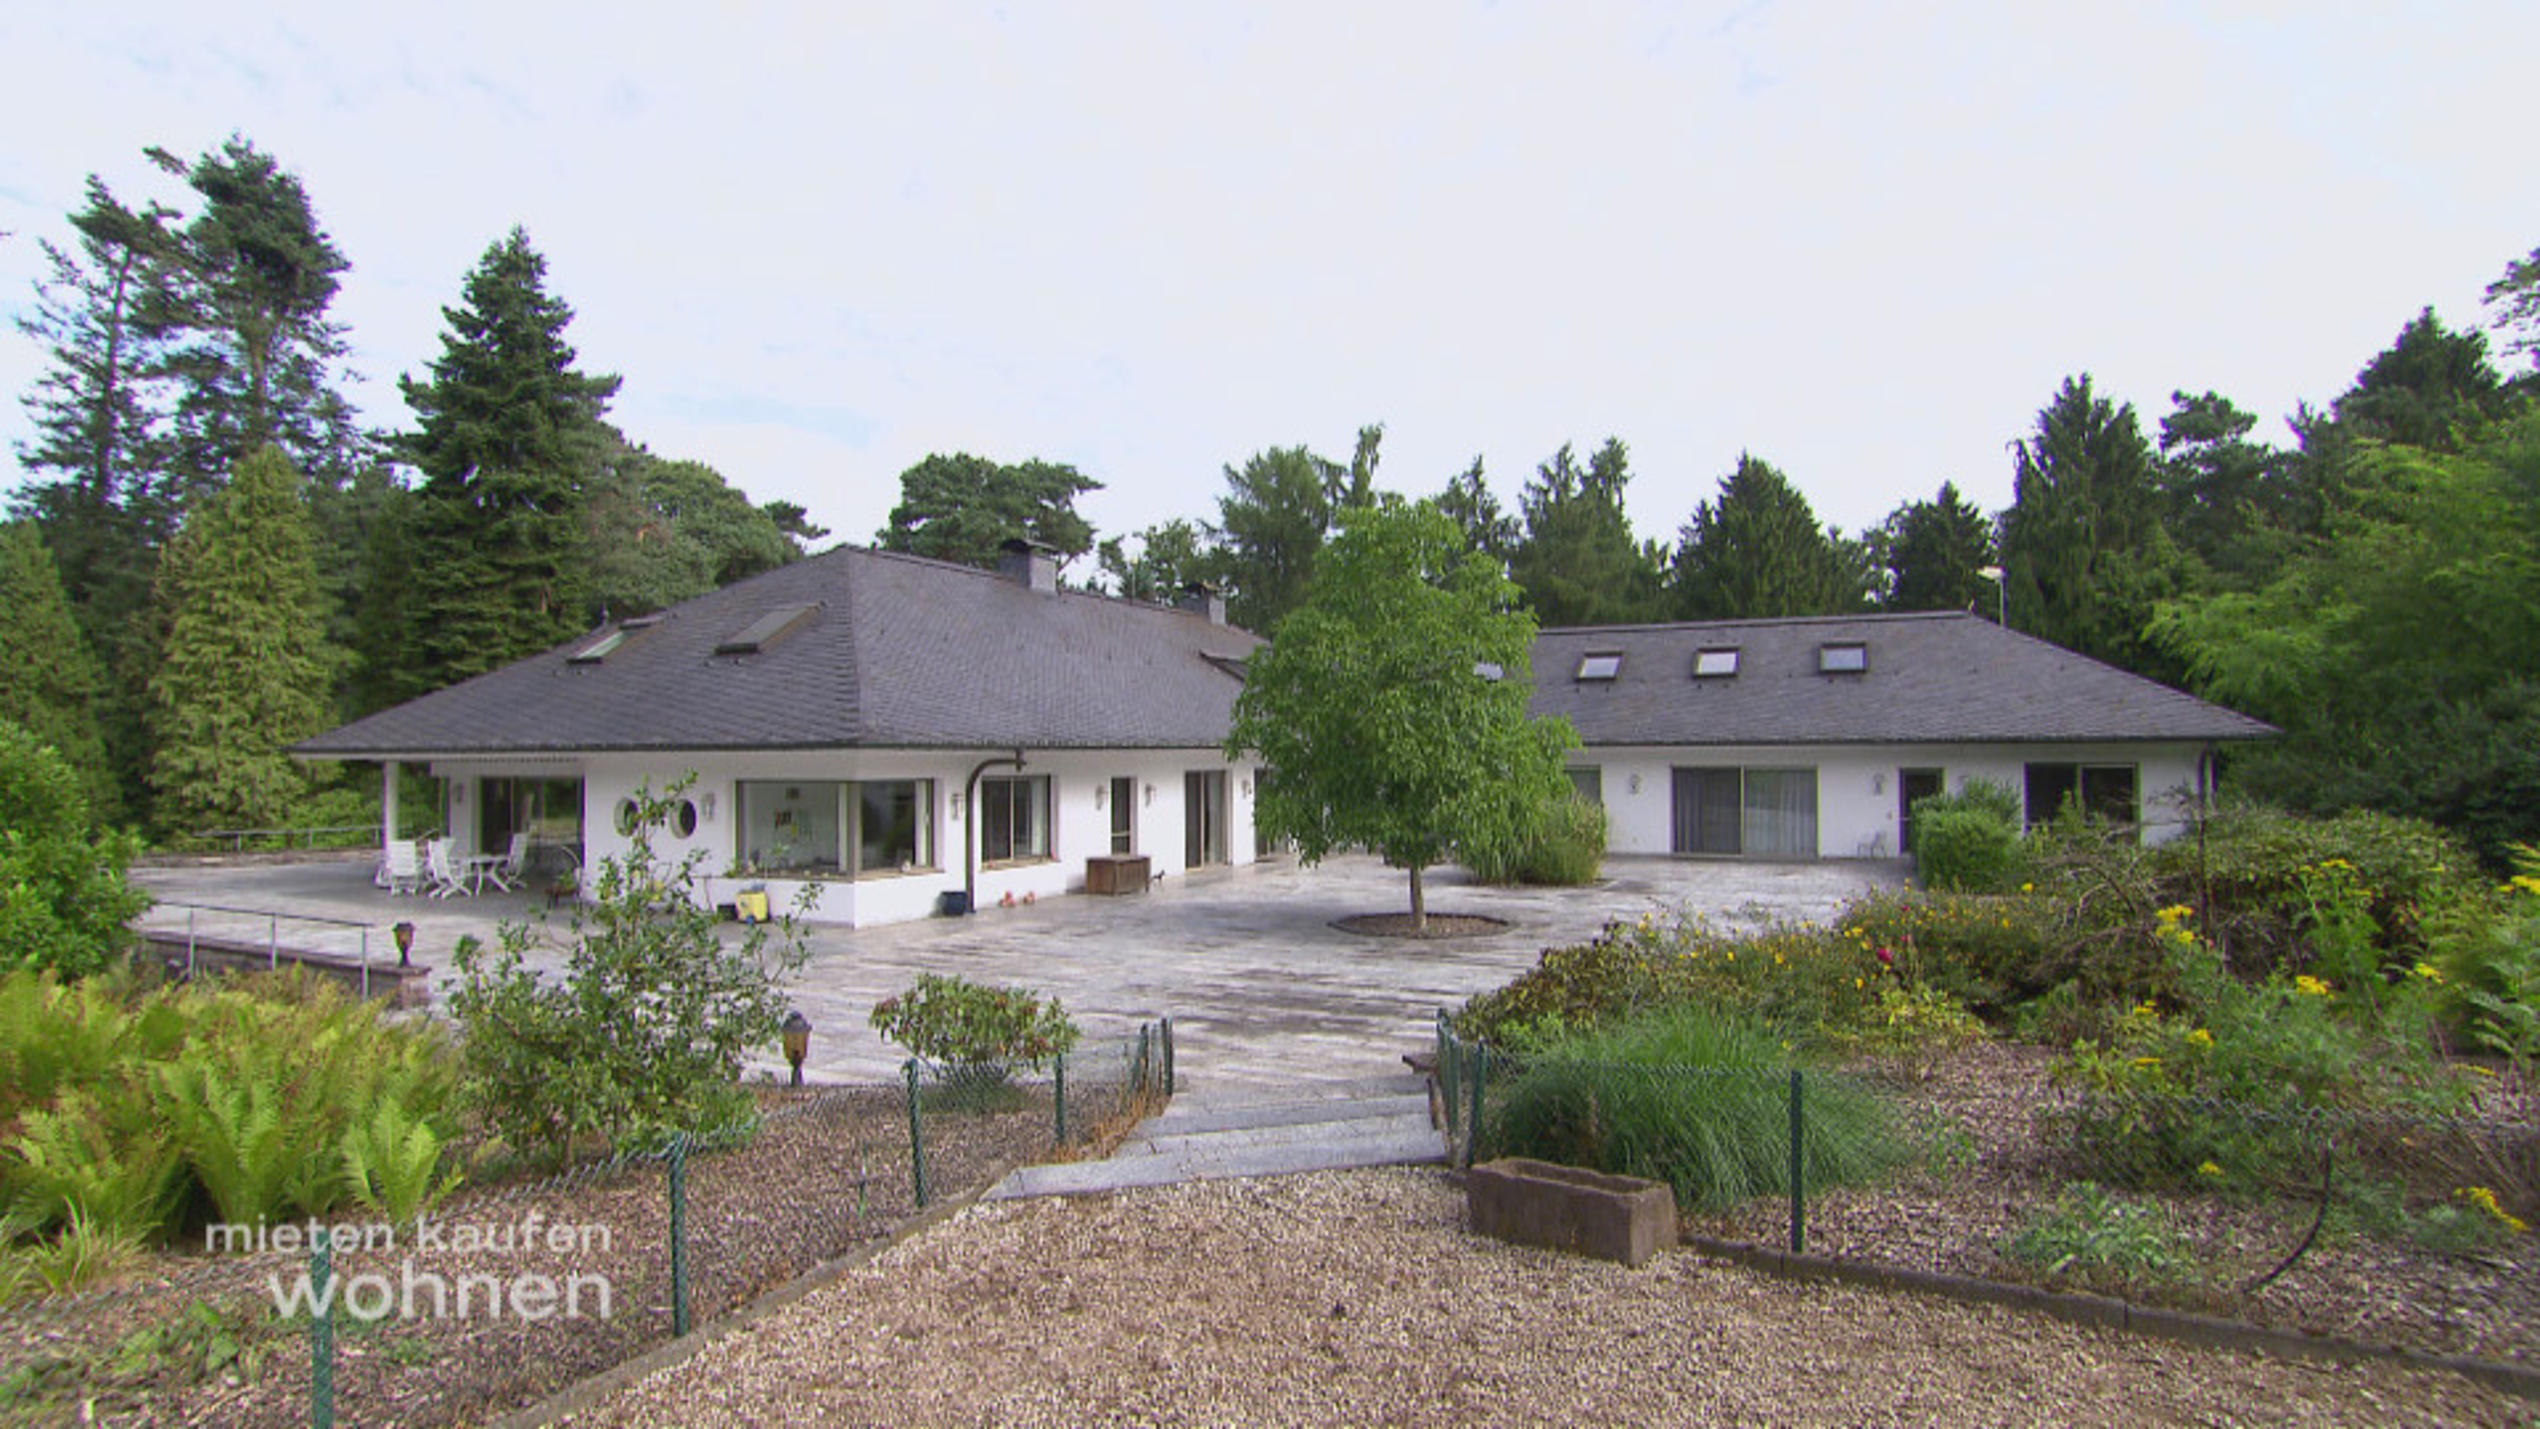 mieten, kaufen, wohnen: Diese Villa will Makler Axel Hartmann gewinnbringend verkaufen.